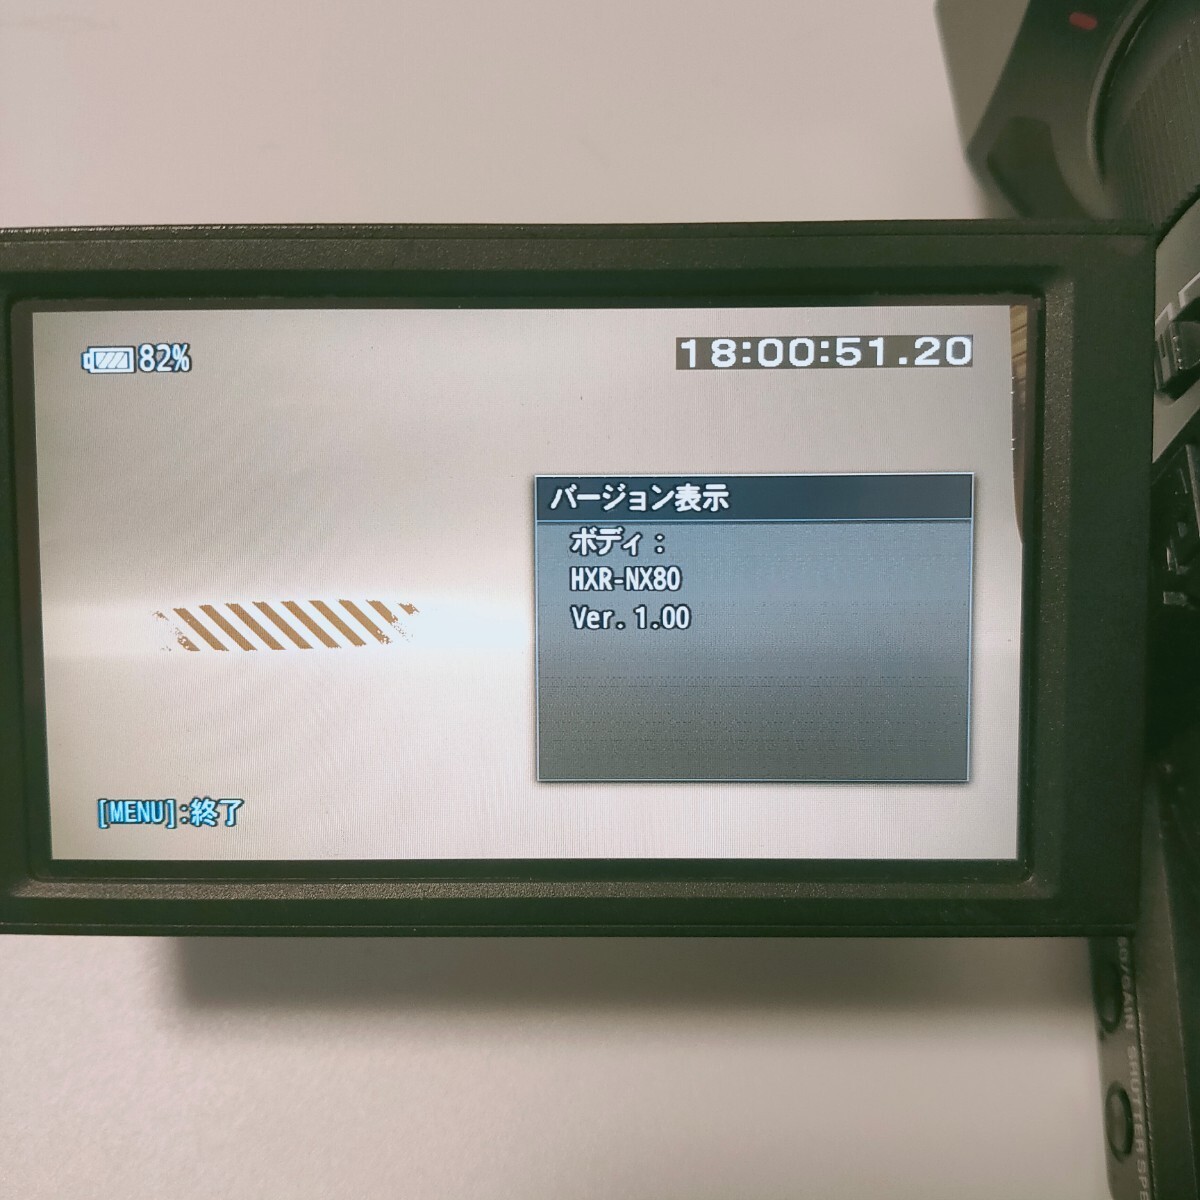  снижение цены SONY для бизнеса маленький размер 4K видео камера HXR-NX80 рабочее состояние подтверждено поиск PXW PDW PMW HDR FDR HVR Z90 Z150 Z100 X70 NX5J NX5R HC X2000 X1500